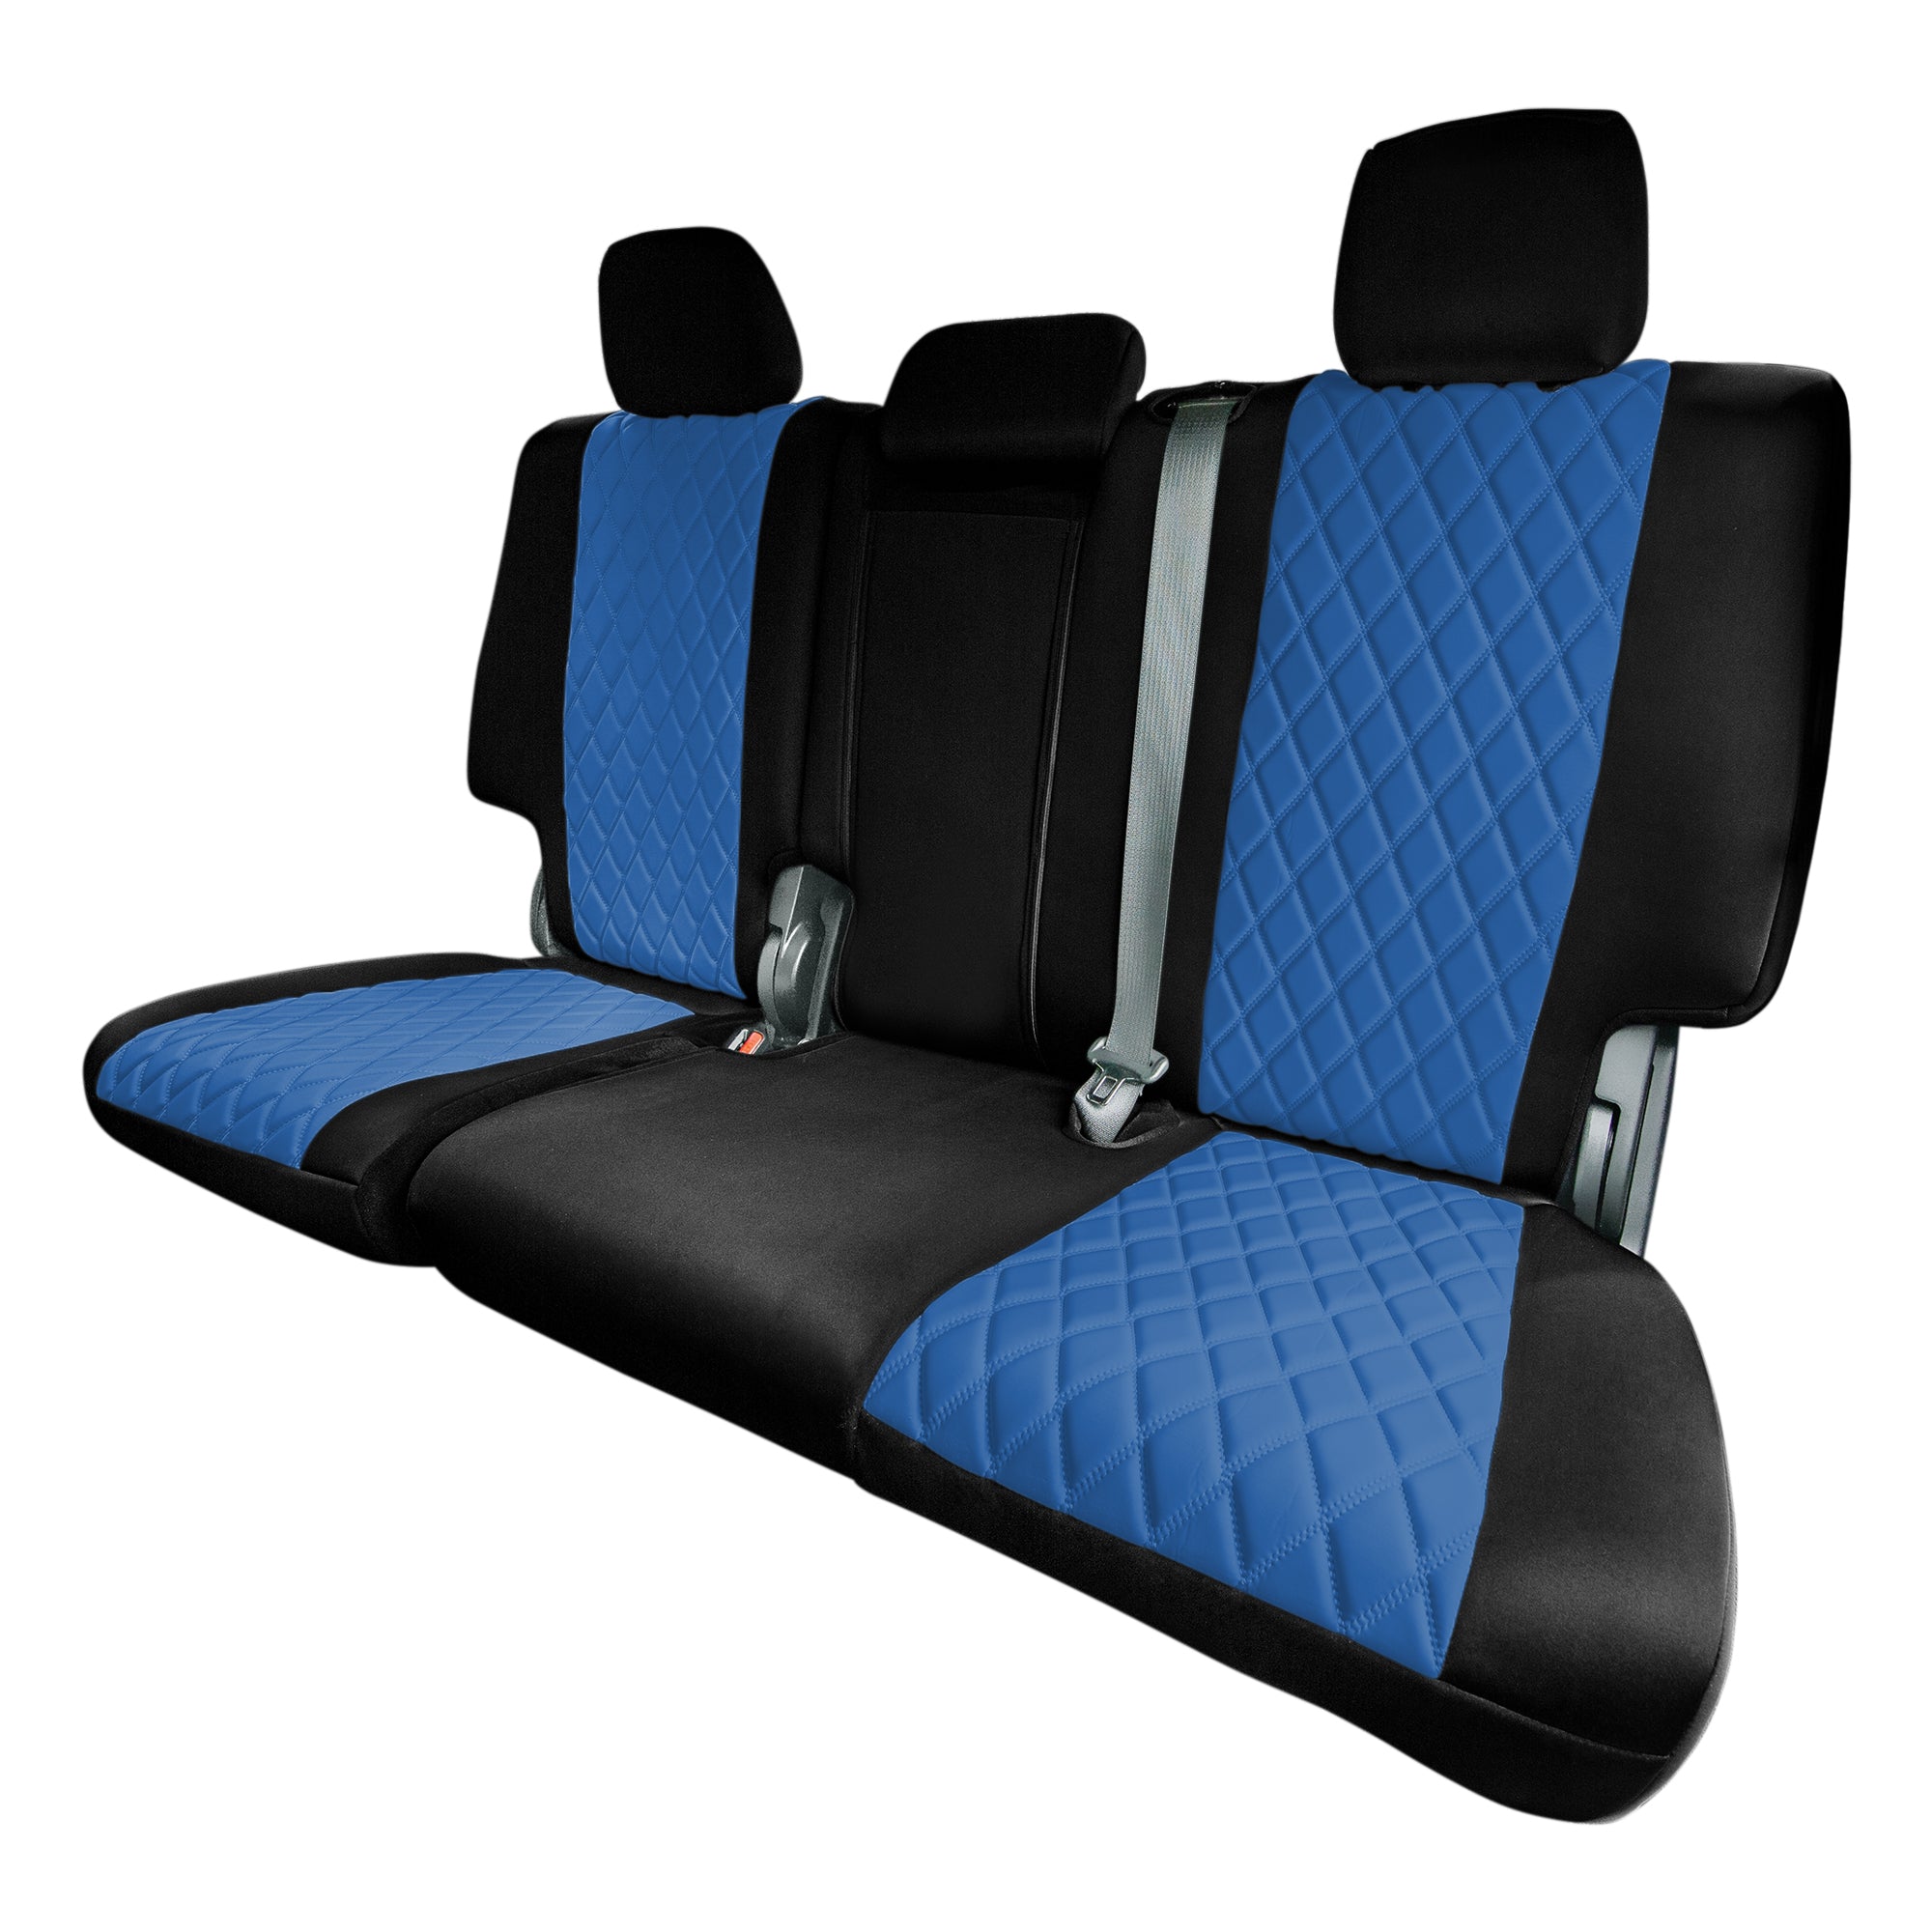 Jeep Grand Cherokee 2011 -2021 - Rear Set Seat Covers - Blue Ultraflex Neoprene